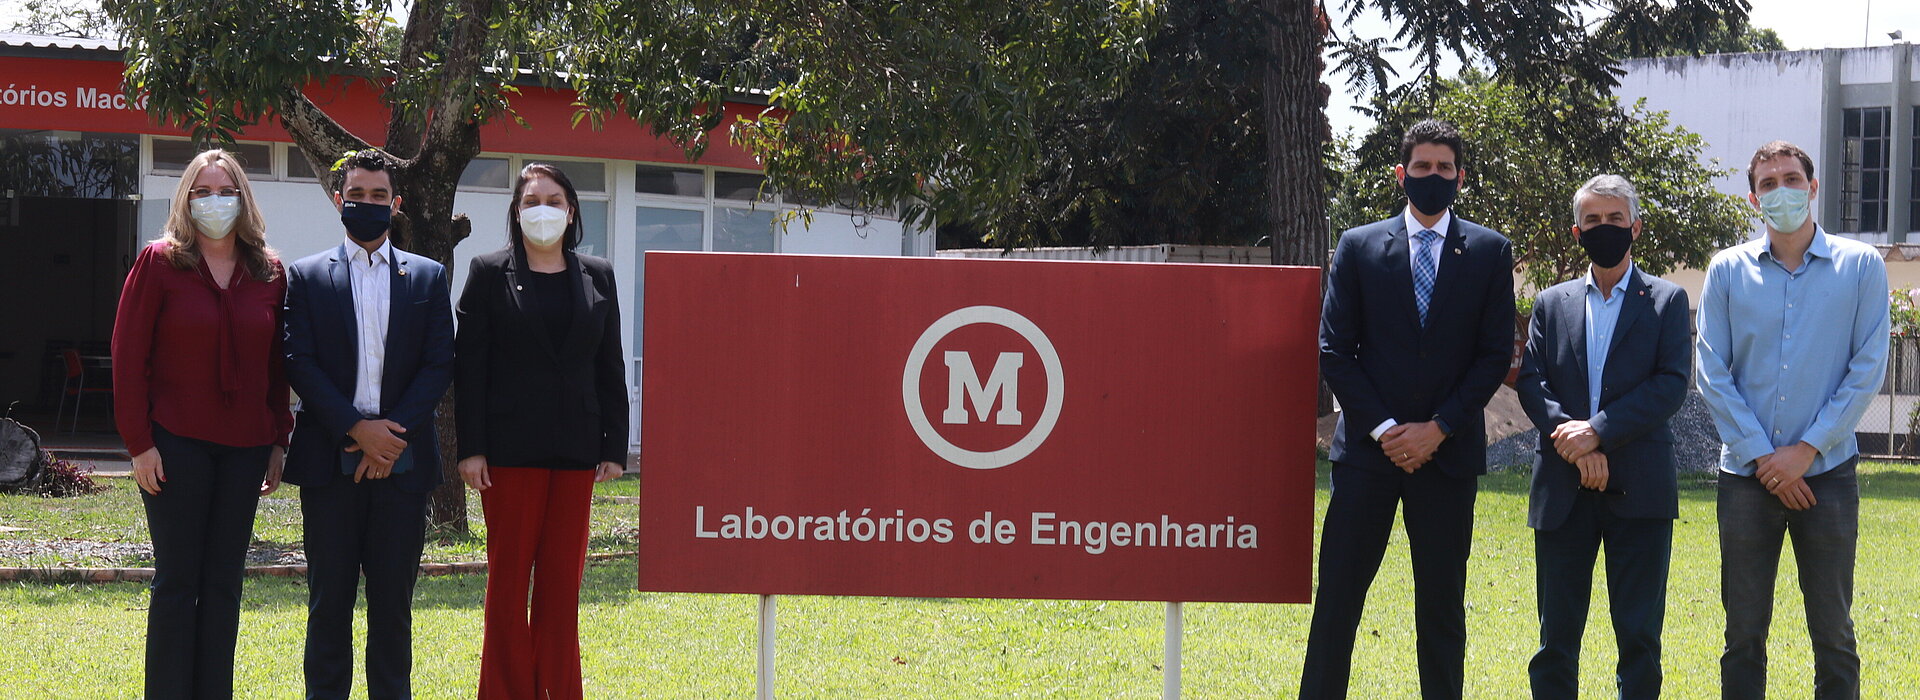 Seis pessoas, entre homens e mulheres, todos usando máscaras, posam para foto em um jardim de gramado verde ao lado da placa que diz, "Laboratório de Engenharia"